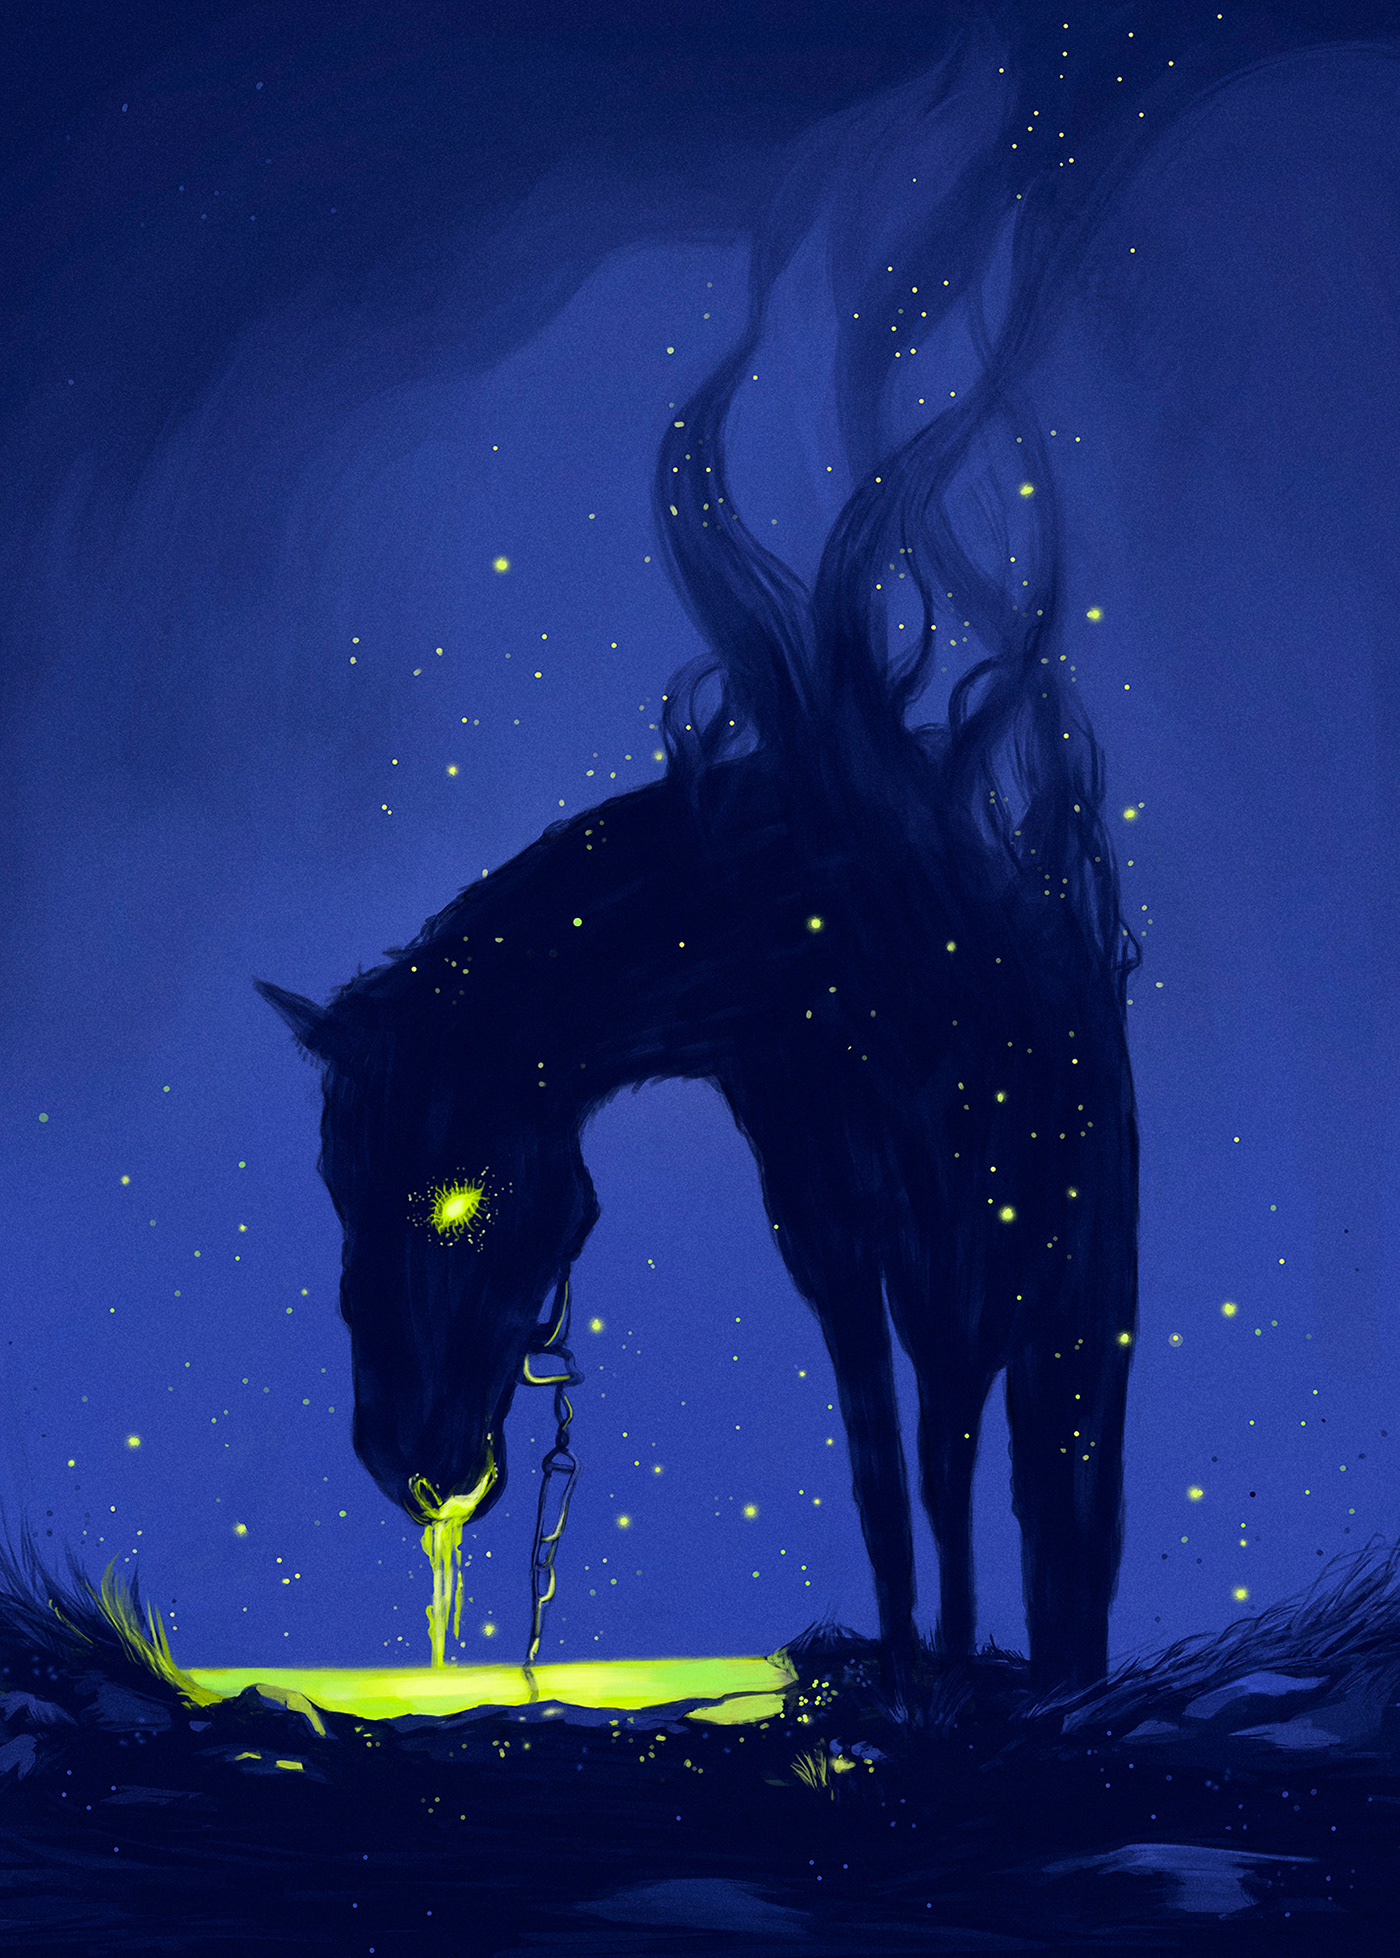 lovecraft horror dark fantasy lovecraftian figurative mistic Fantastic World book illustration Illustrator